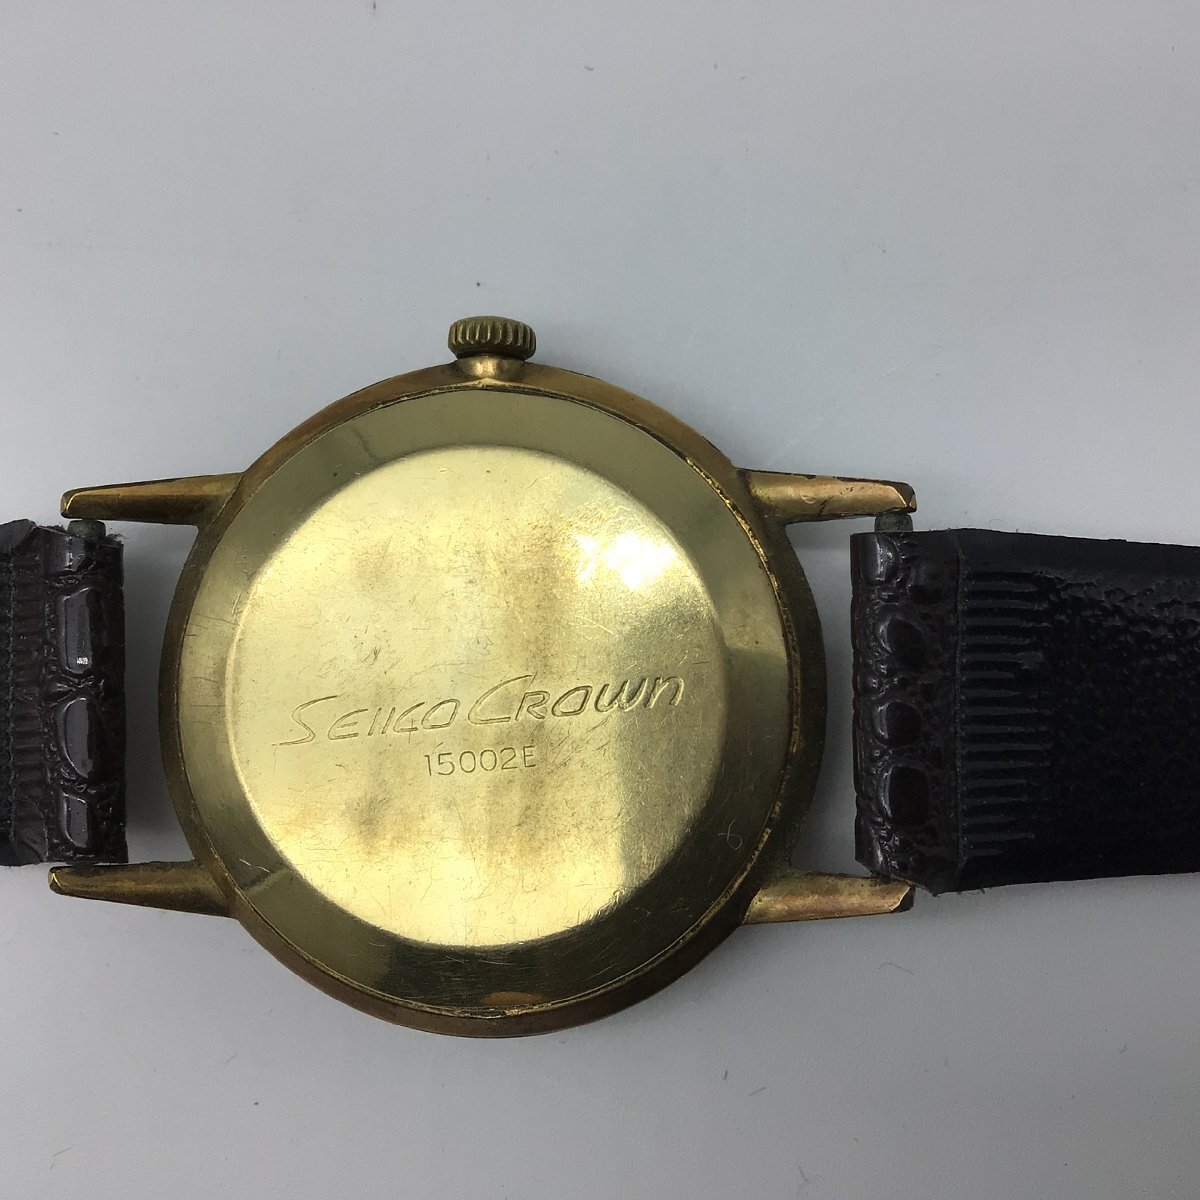 2781 【1960年代】SEIKO CROWN セイコー クラウン 15002E 21石 GOLD FILLED 金張り 紳士用 手巻き時計 可動品の画像3